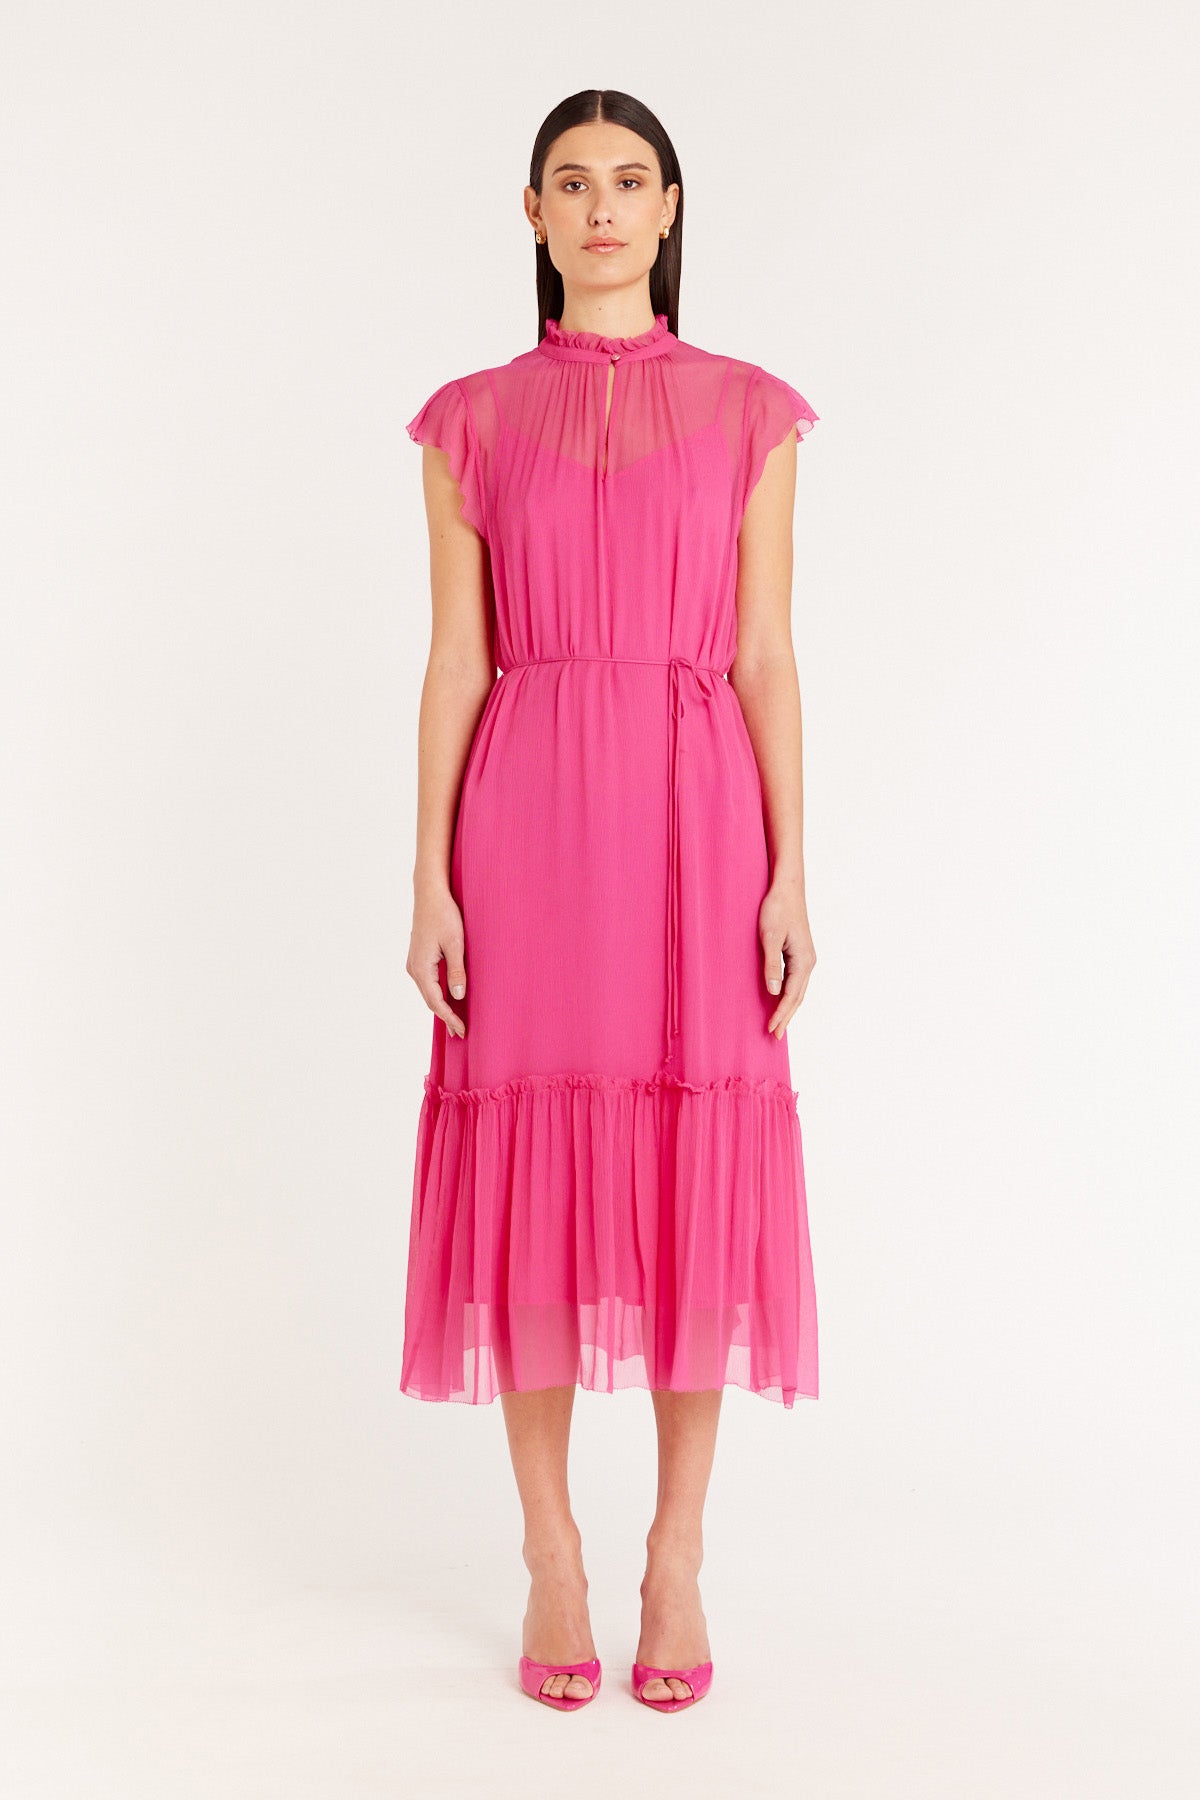 Lisbon Dress - Pink-Perri Cutten